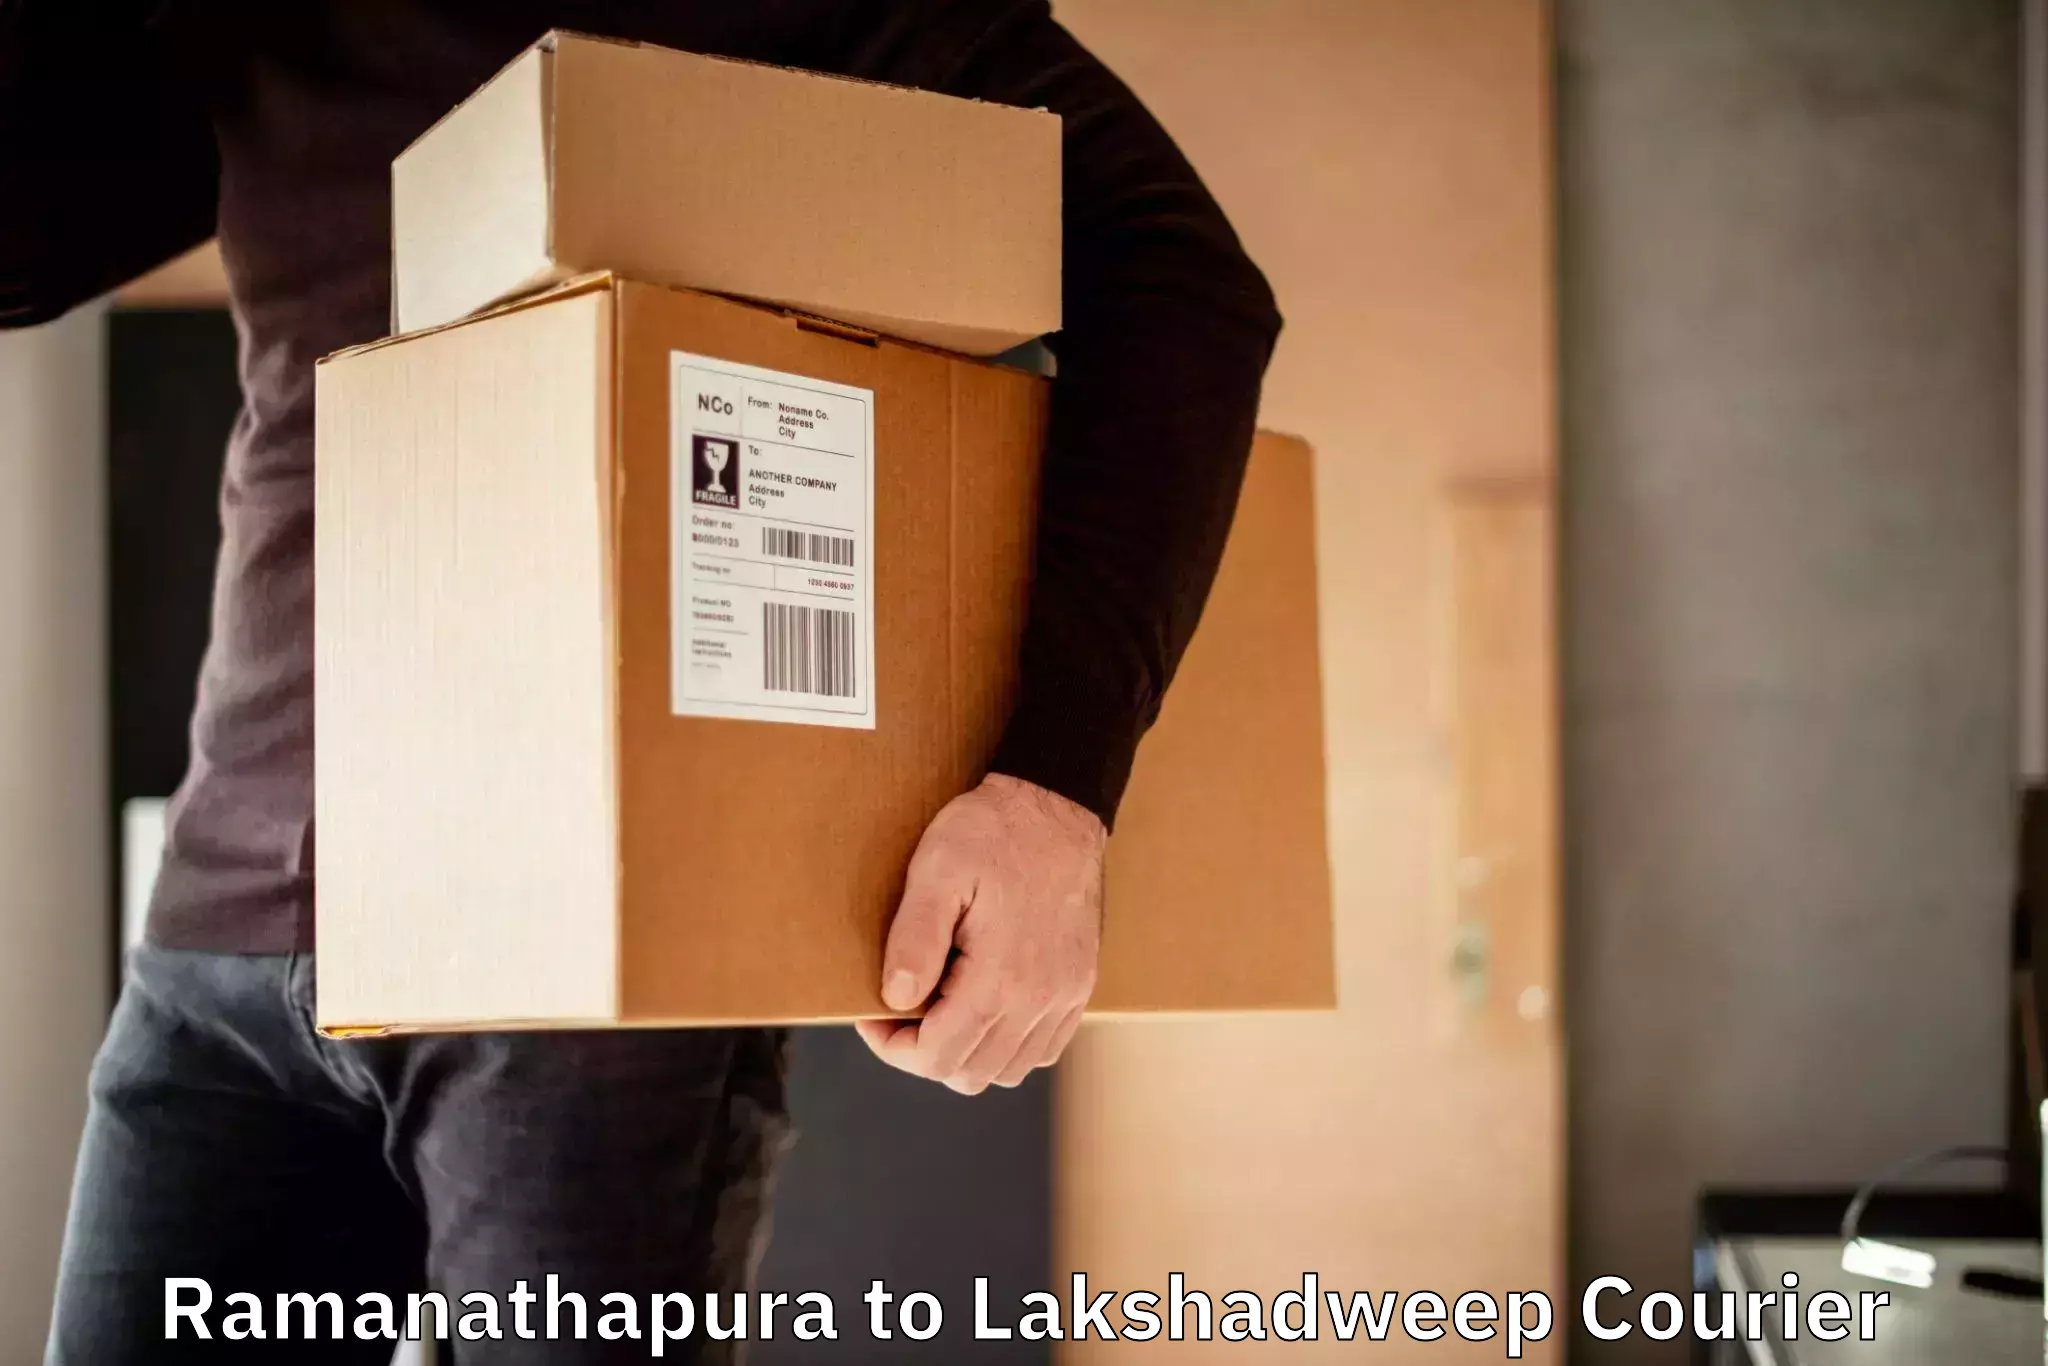 Bulk order courier Ramanathapura to Lakshadweep